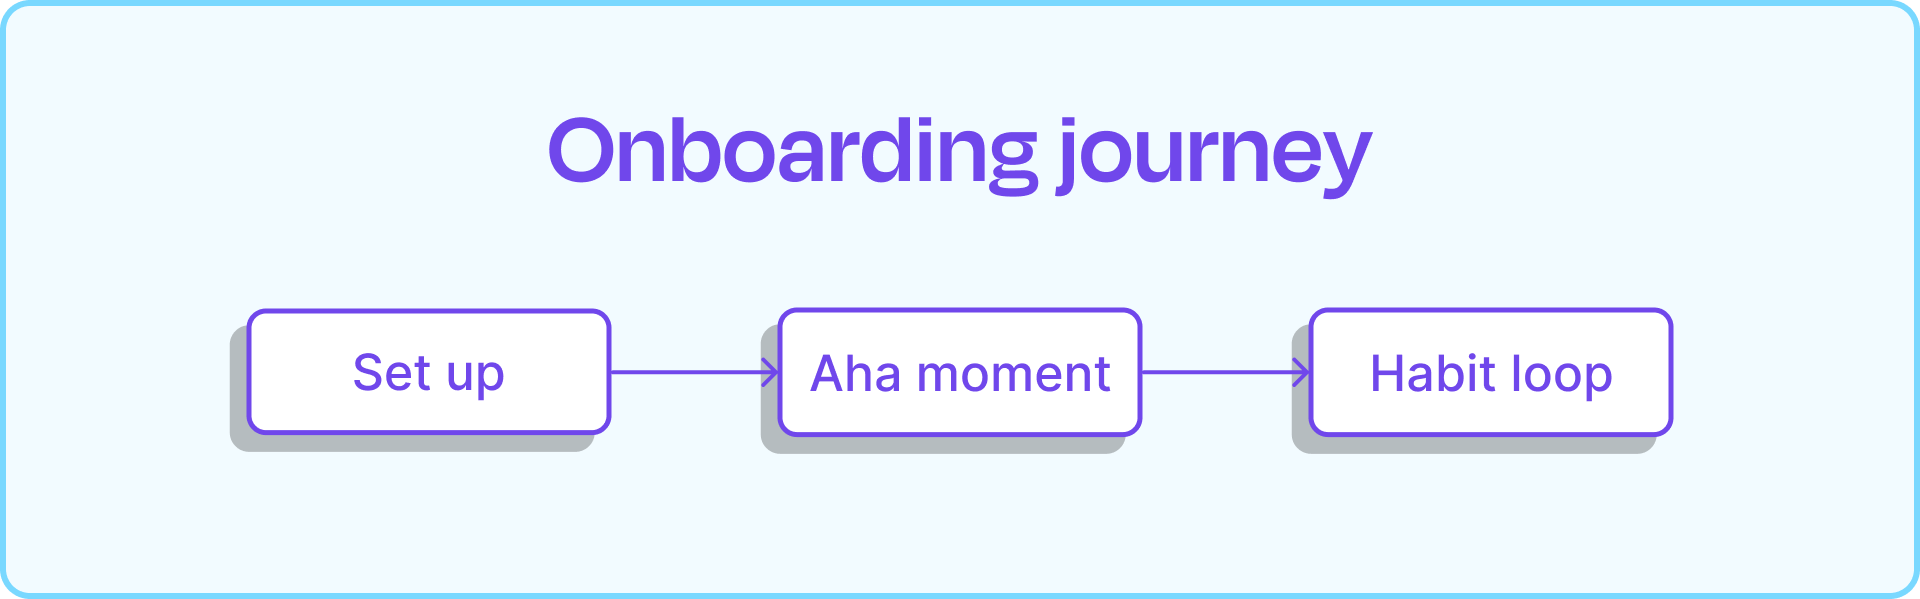 Onboarding journey diagram